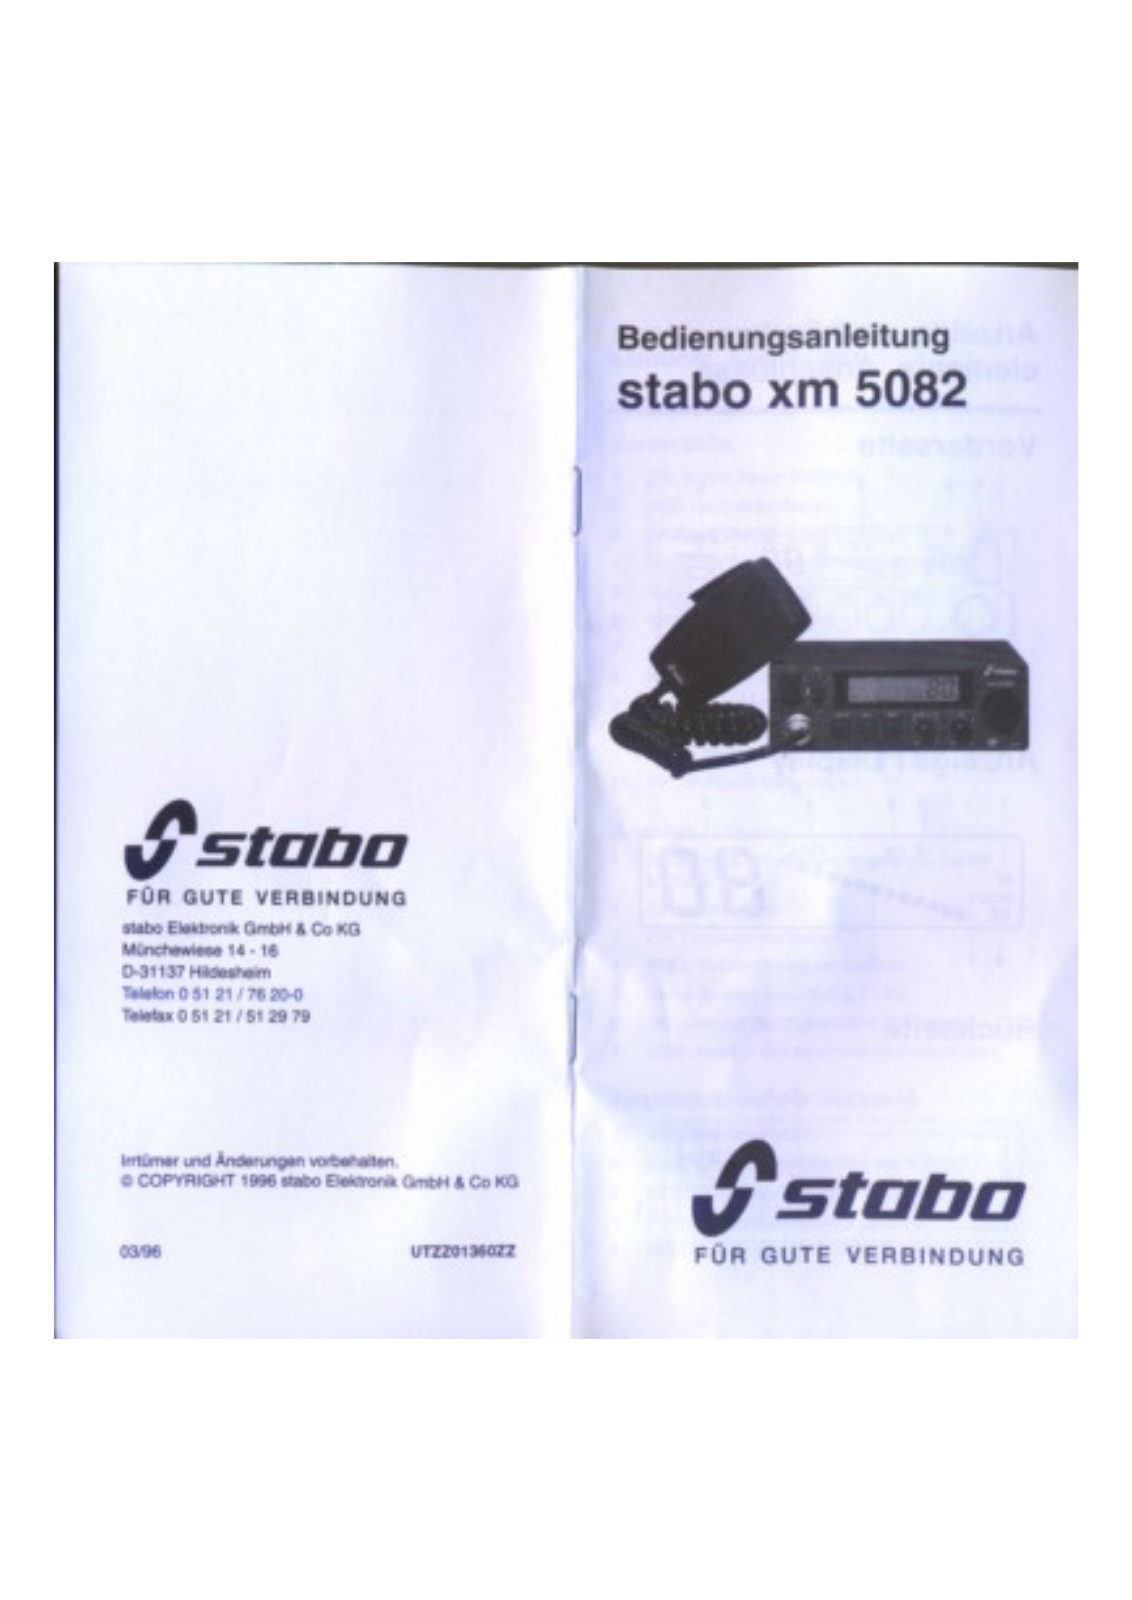 stabo xm 5082 User Manual